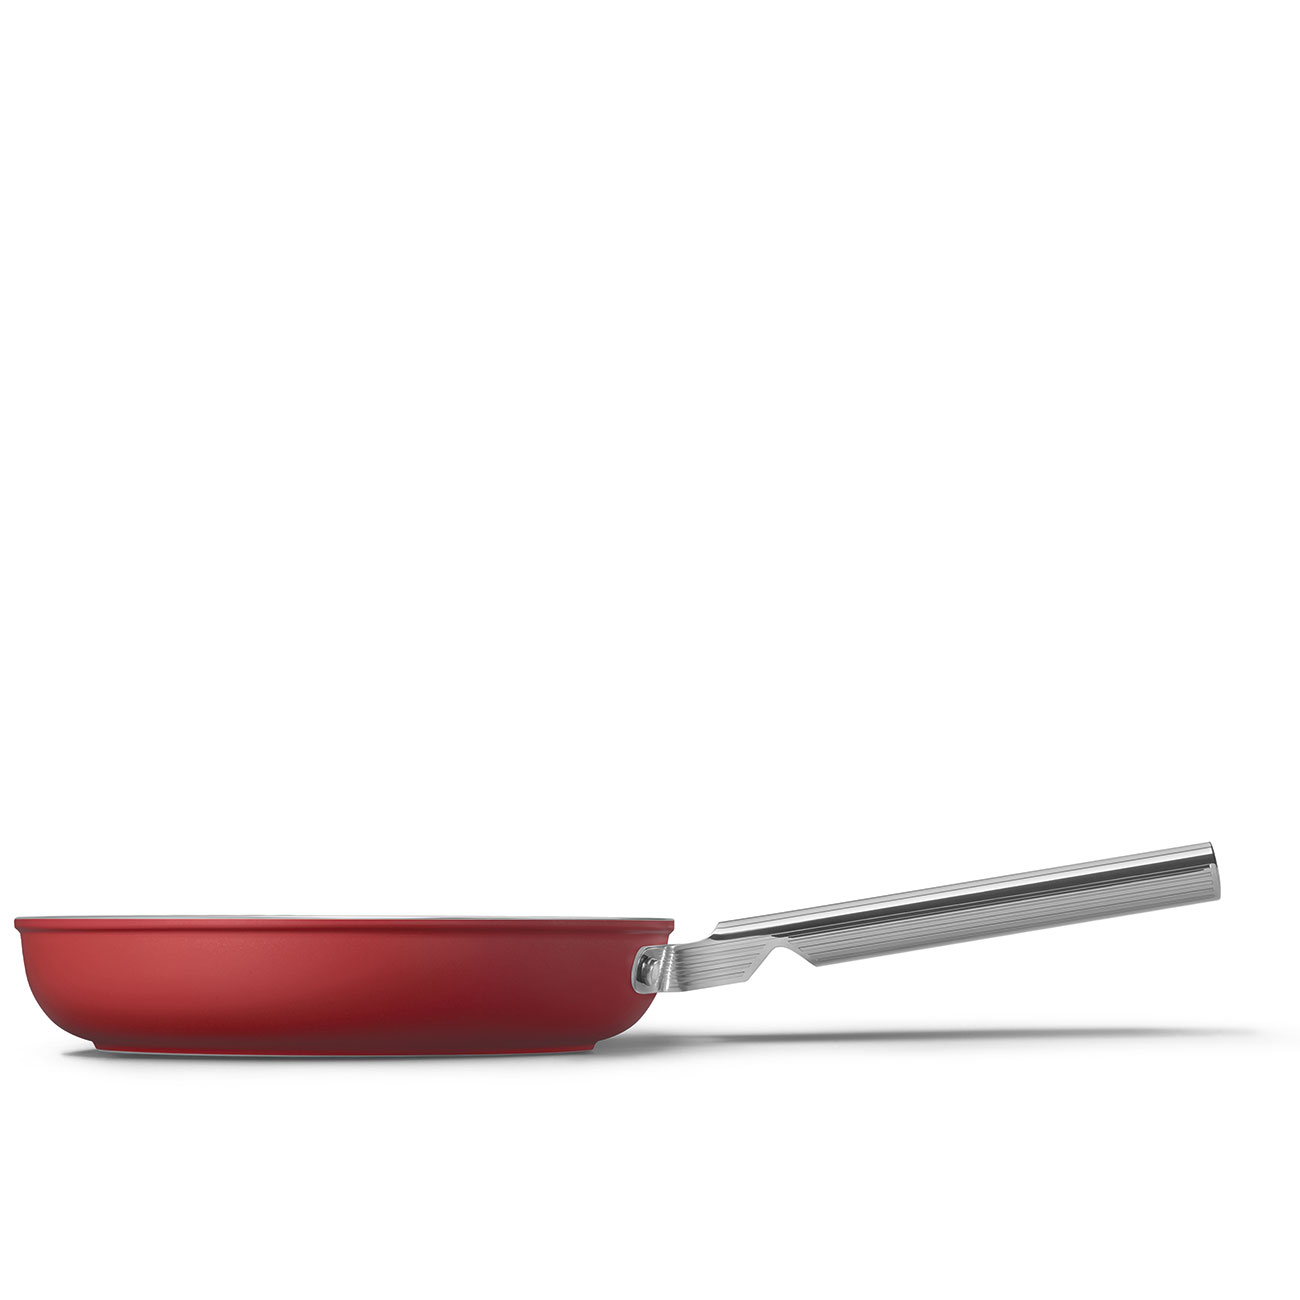 SMEG Cookware 50'S Style Kırmızı Tava 24 cm